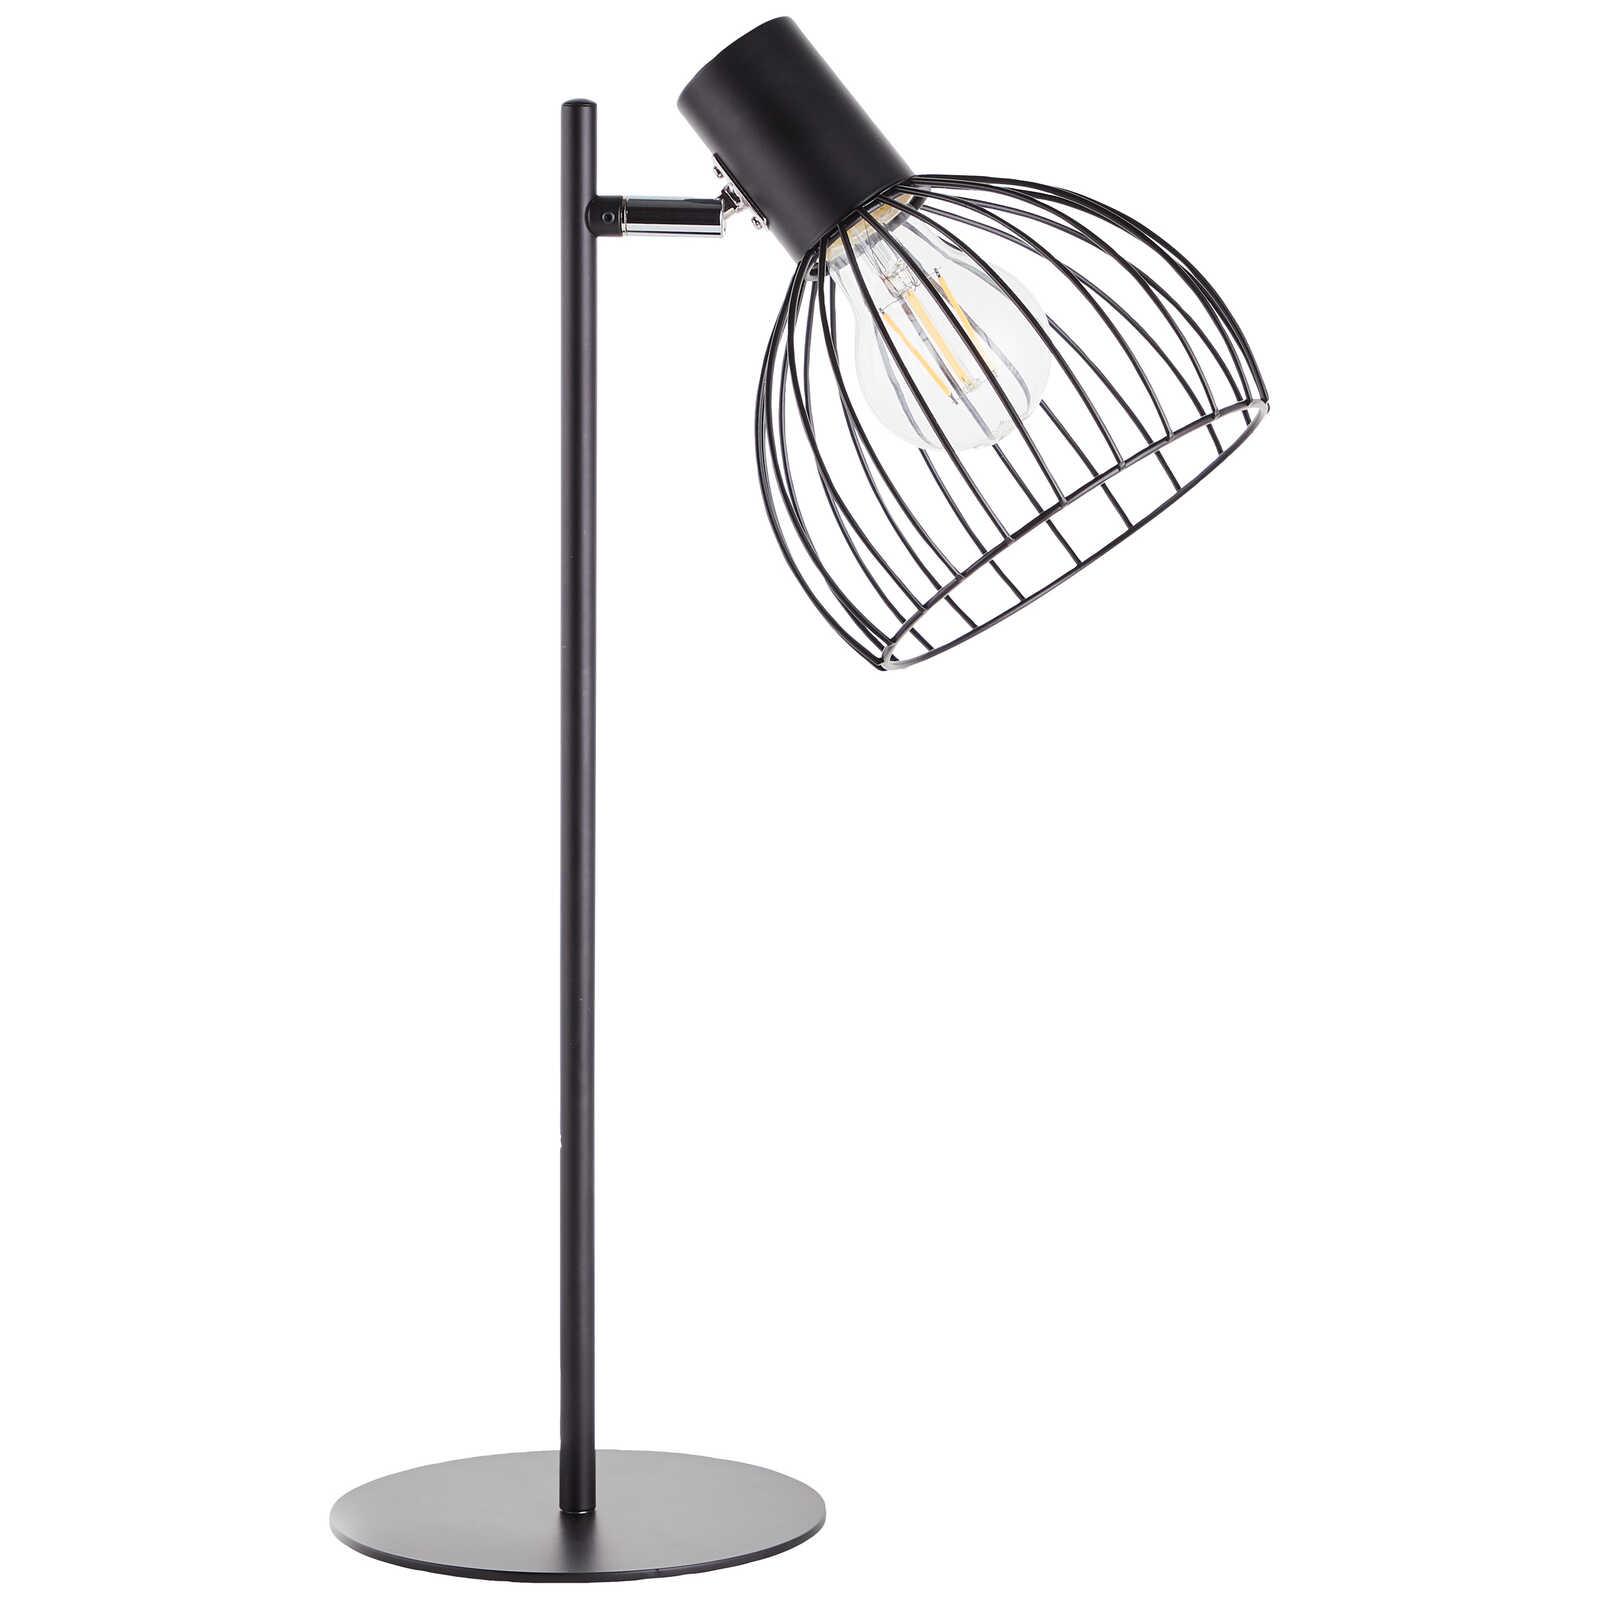             Metal table lamp - Bruno 1 - Black
        